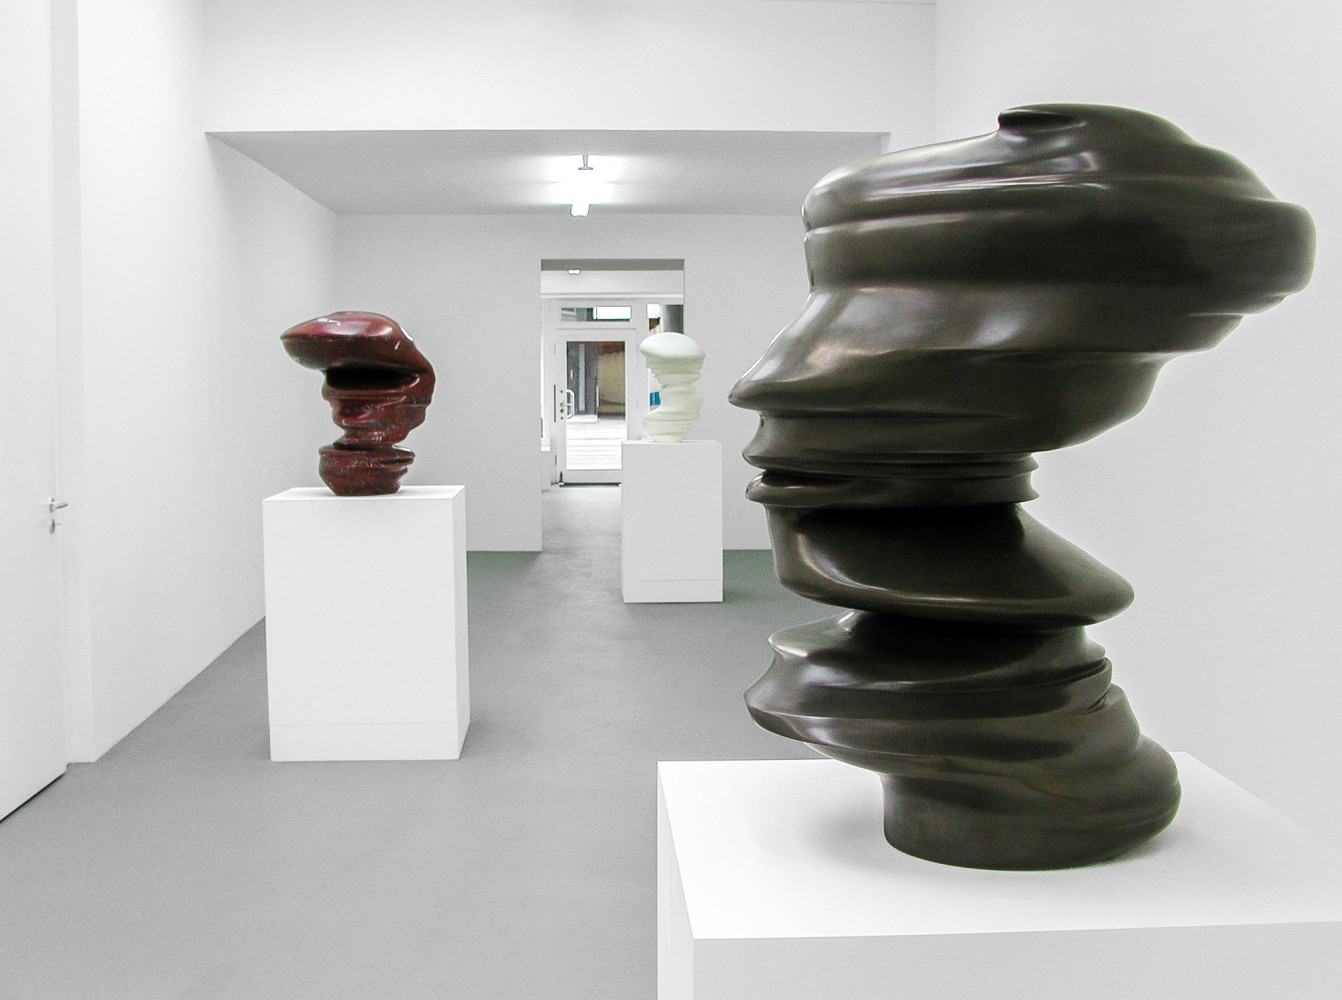 Tony Cragg, ‘Sculptures’, Installation view, Buchmann Galerie Köln, 2002